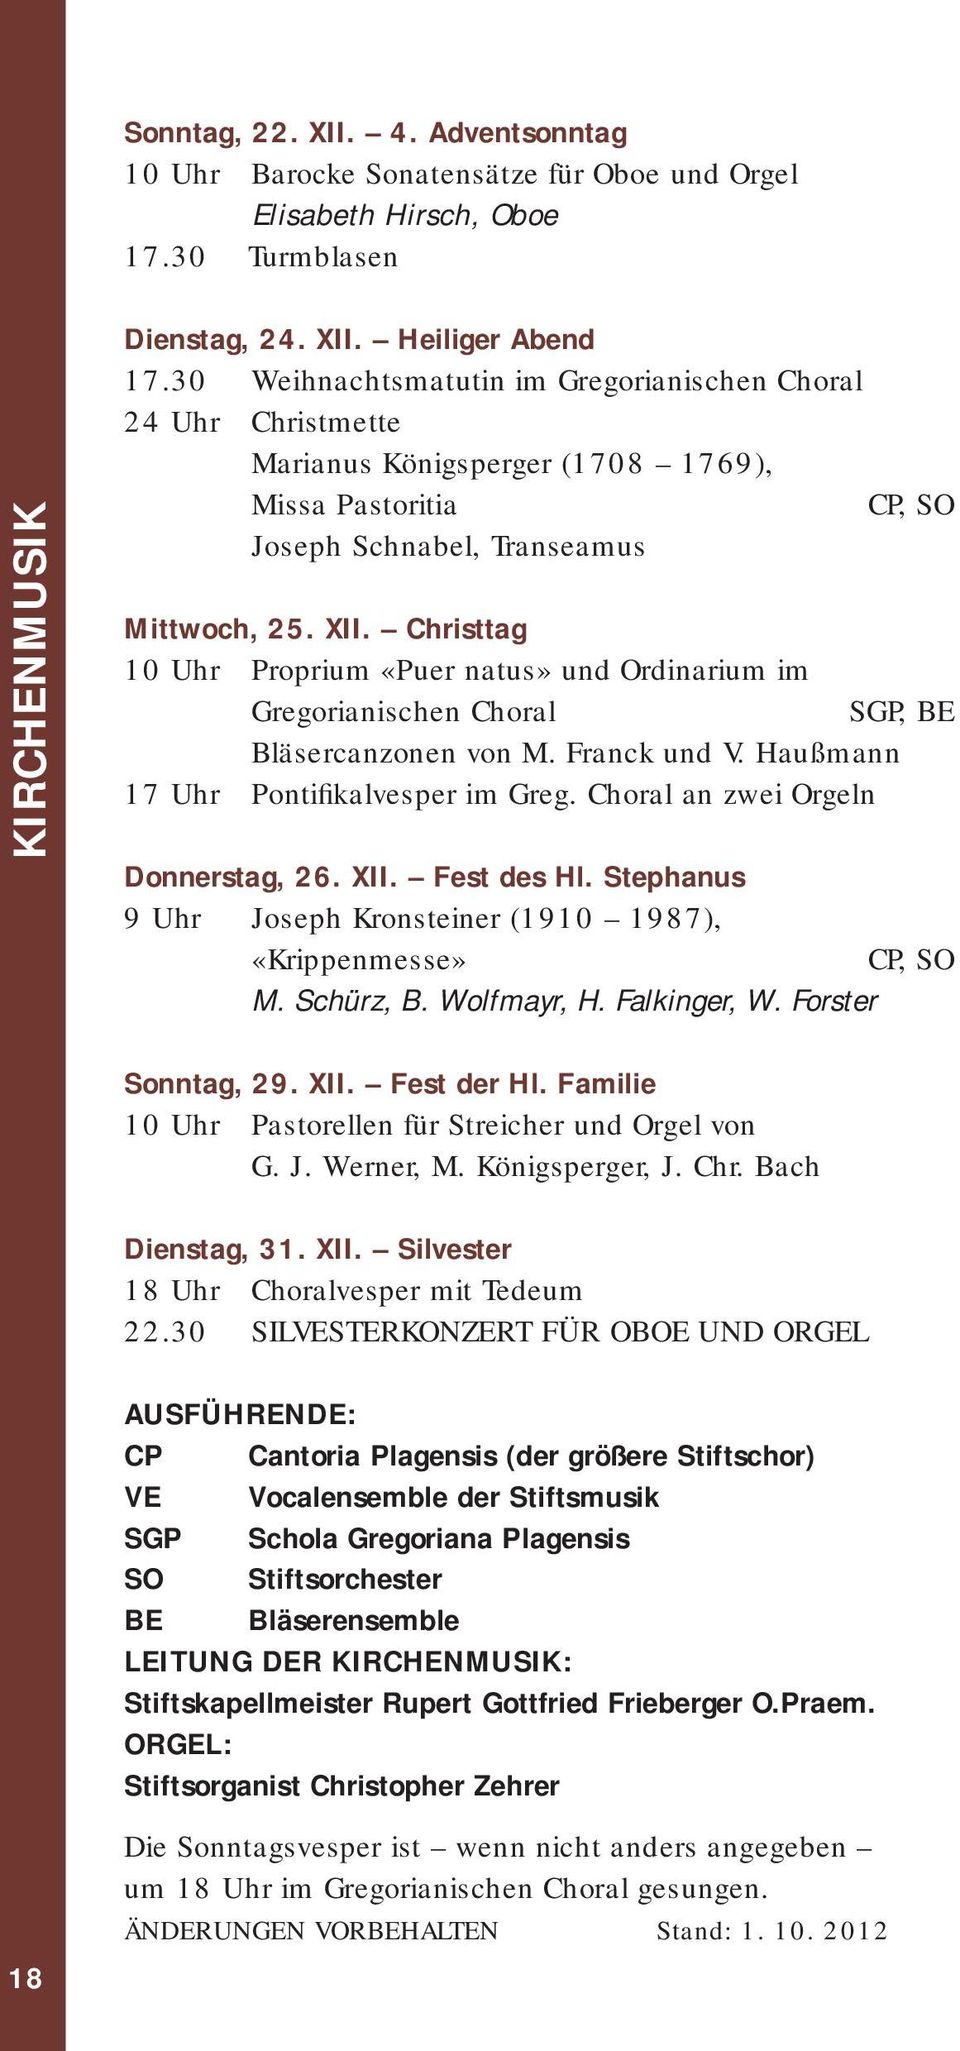 Christtag 10 Uhr Proprium «Puer natus» und Ordinarium im Gregorianischen Choral SGP, BE Bläsercanzonen von M. Franck und V. Haußmann 17 Uhr Pontifikalvesper im Greg.